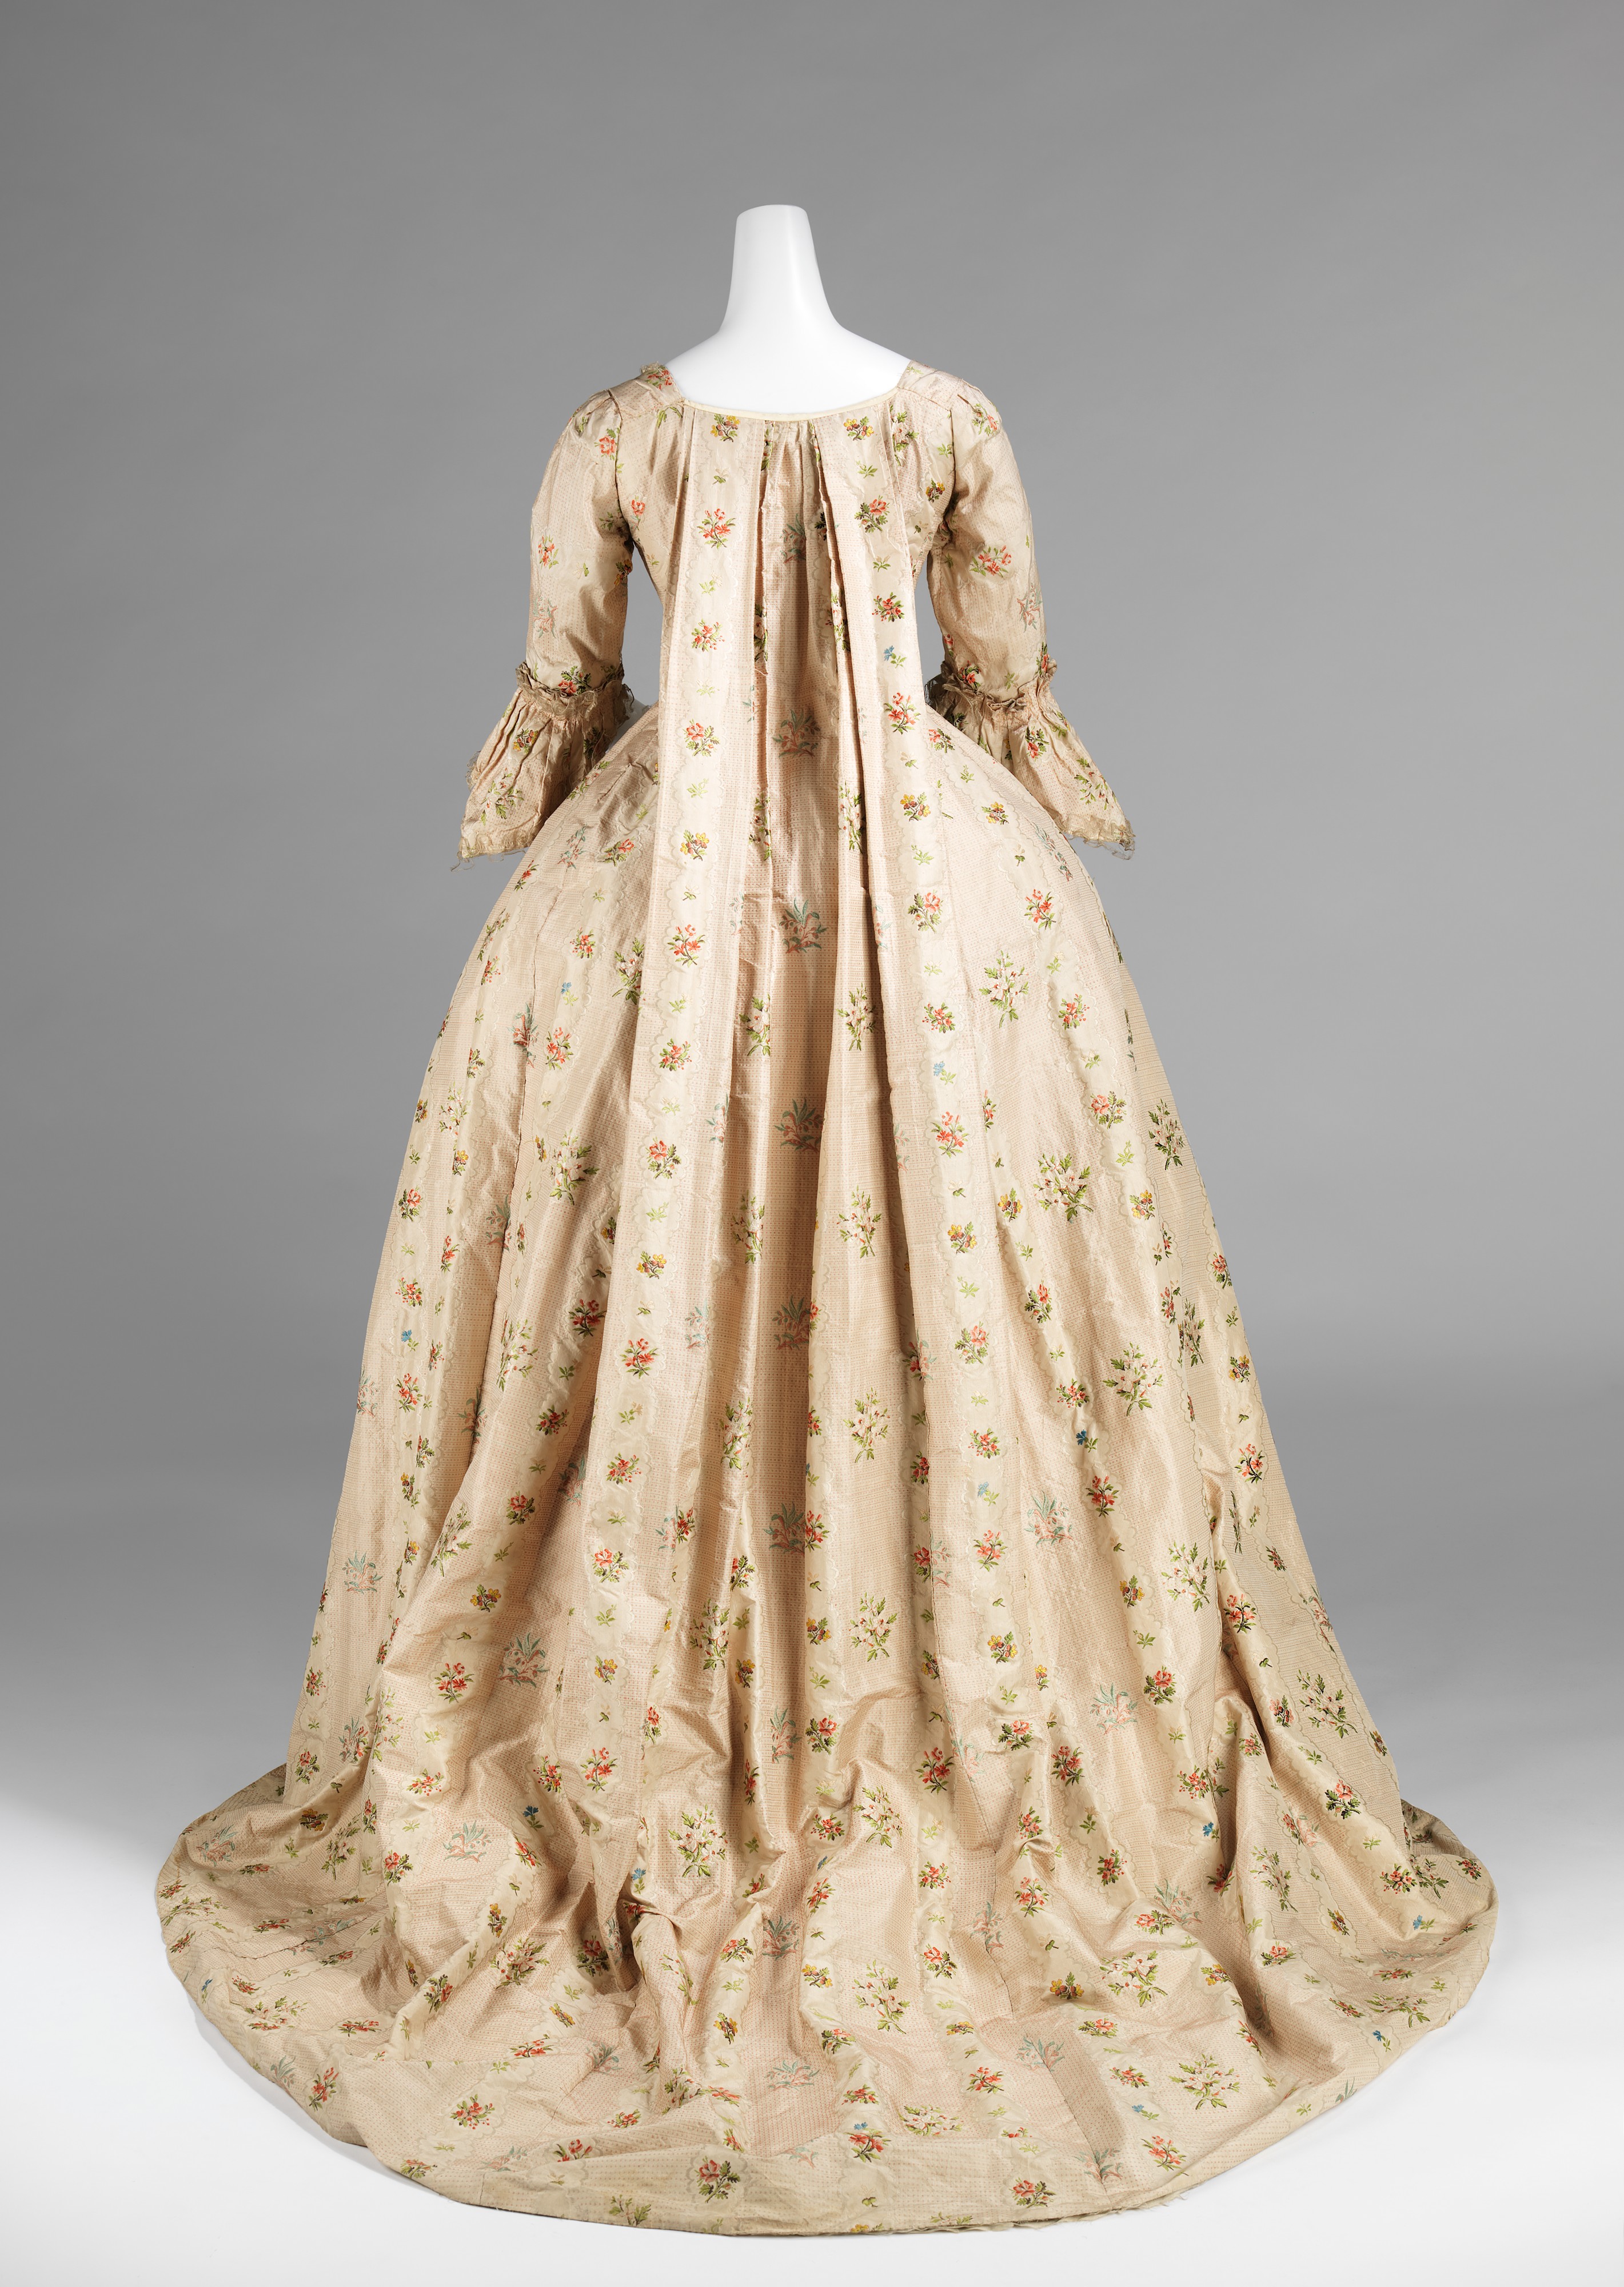 Robe à la française | French | The Metropolitan Museum of Art